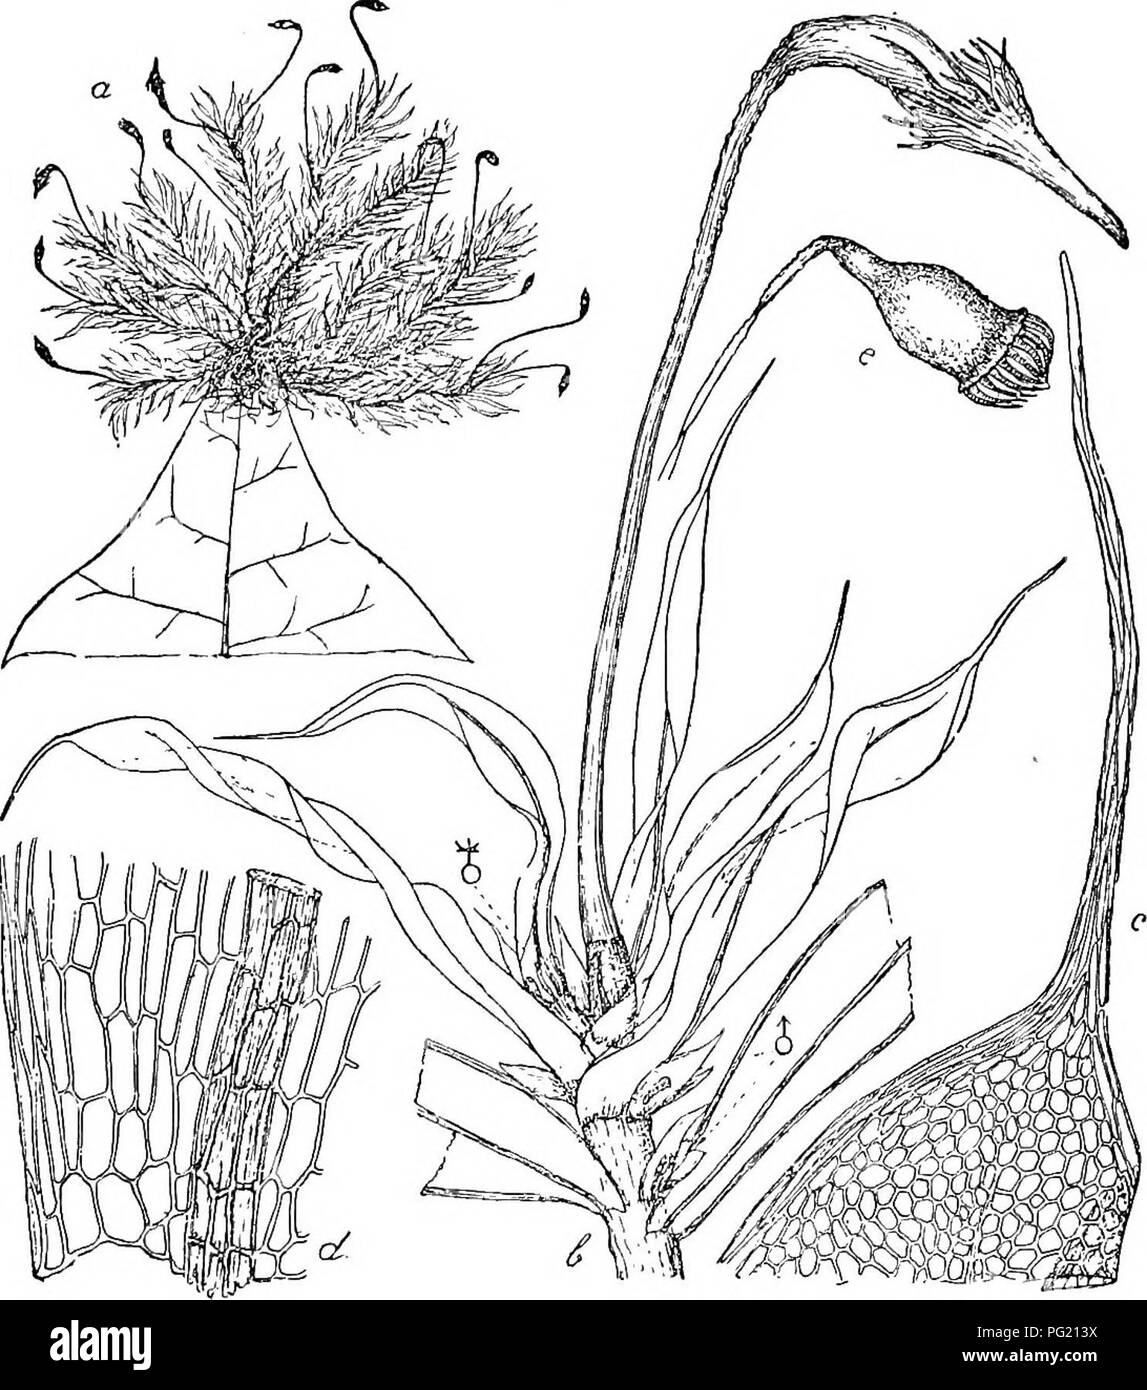 . Flore de Buitenzorg. Botany. 965 collenchymatisch verdickt, am Grande des Halses mit grossen (35 fi.), mehrzelligen (durch radiare Scheidewande 5—6 zelligen) Spaltoffnungen, Porus rund. Ring nicht besonders aus- gebildet; Deckel aus kegeliger Basis kurz und gerade geschna- belt; Haube aufrecht, mutzenformig, mit braunera Schnabel, Fig 166.. Dallotiia aristifolia Ren. et Cakd. u. Habitusbild J. d. Blattgrund -^-f^. b. terminaler Bliitenstand mit Sporogon y. e. entdeckeltes Sporogon .'. c. Blattspitzo —f^- Cilien zahlreich, hyalin, einzellig. Peristom gross, an der Mundung inseriert, uber 0,3 Stock Photo